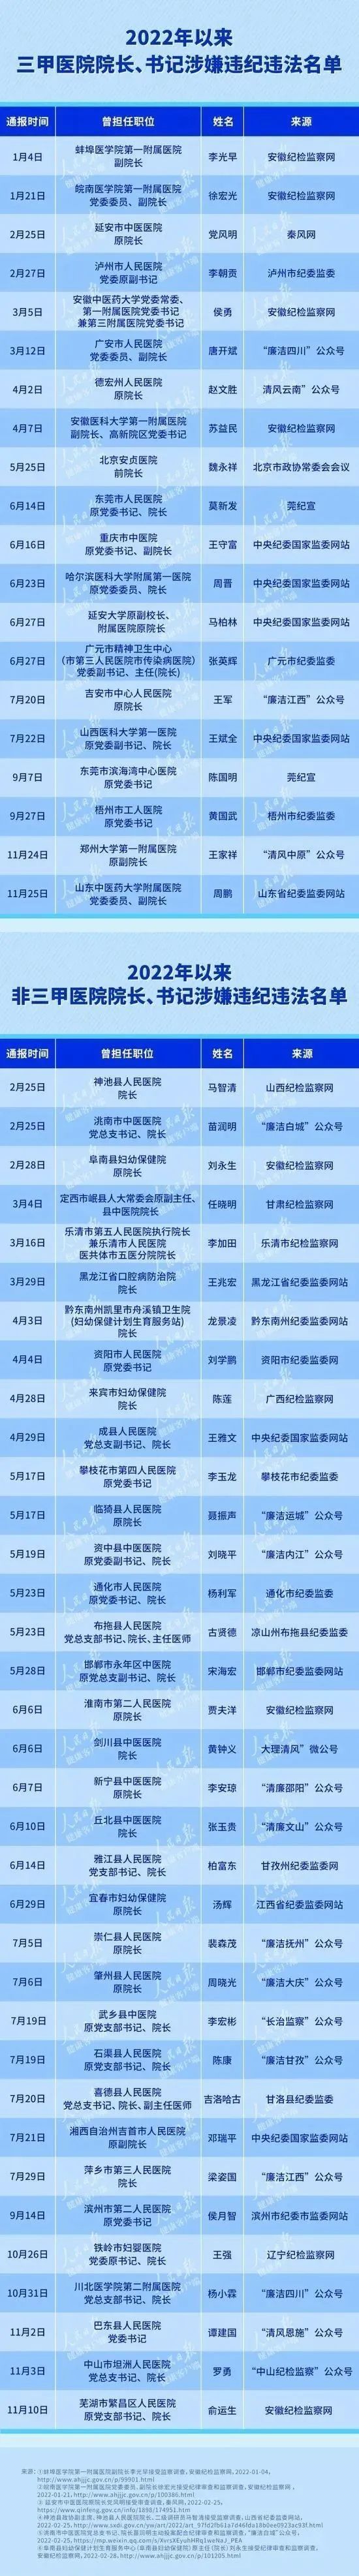 26名医院领导落马_广西警察枪杀孕妇案嫌犯被逮捕 6名领导被停职_贵州省委组织部领导名